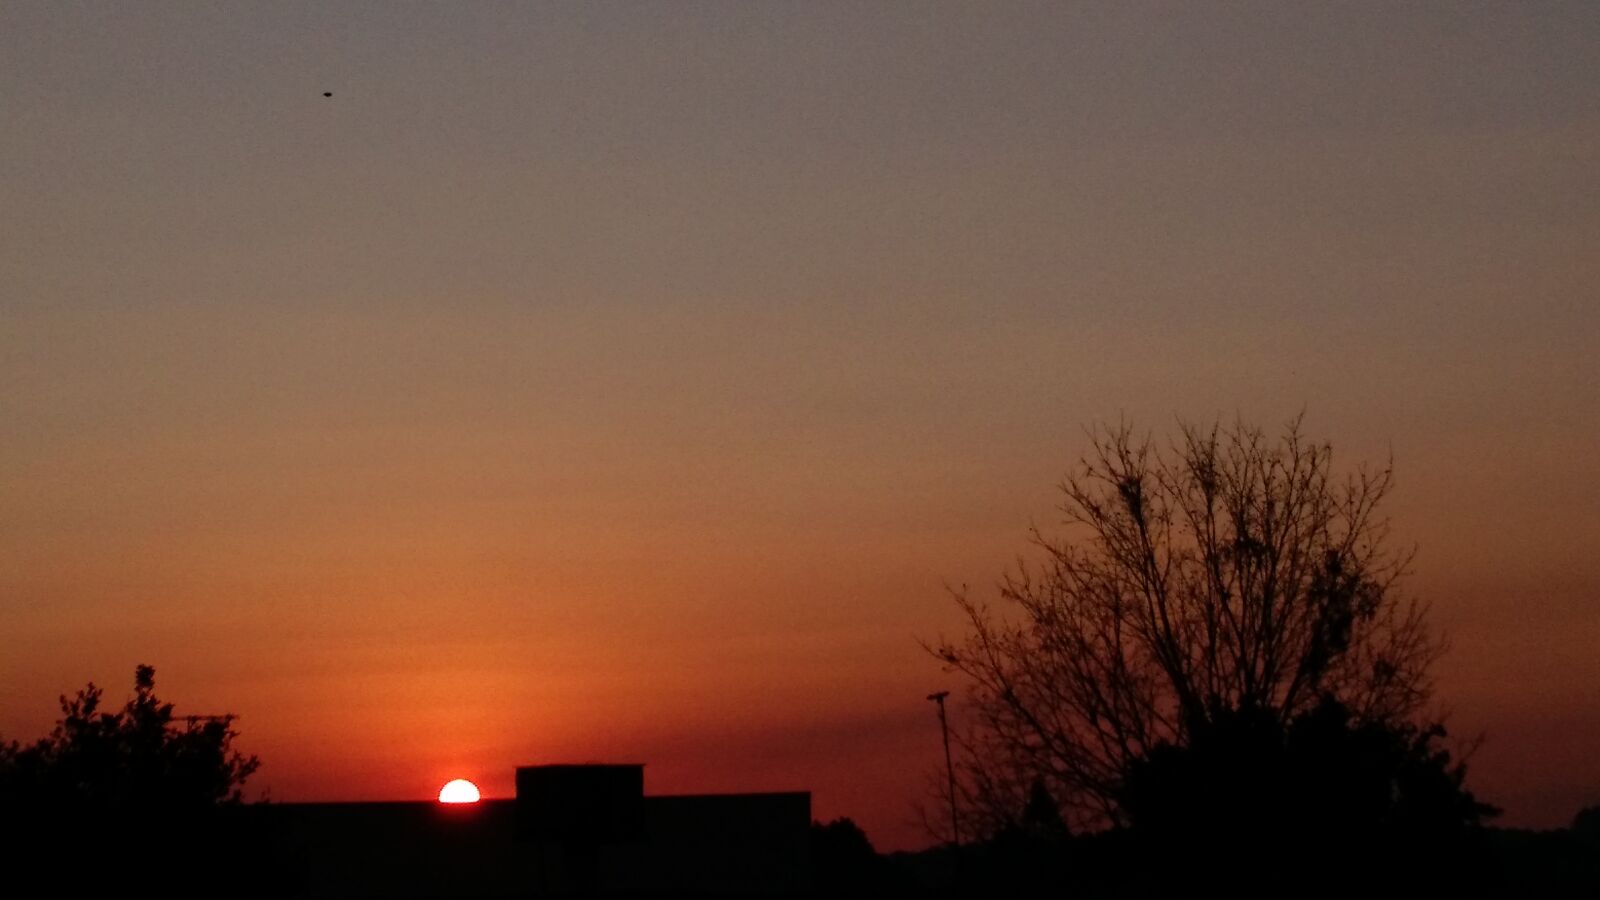 Motorola Moto X (2nd Gen) sample photo. Heaven, sundown, sunset photography